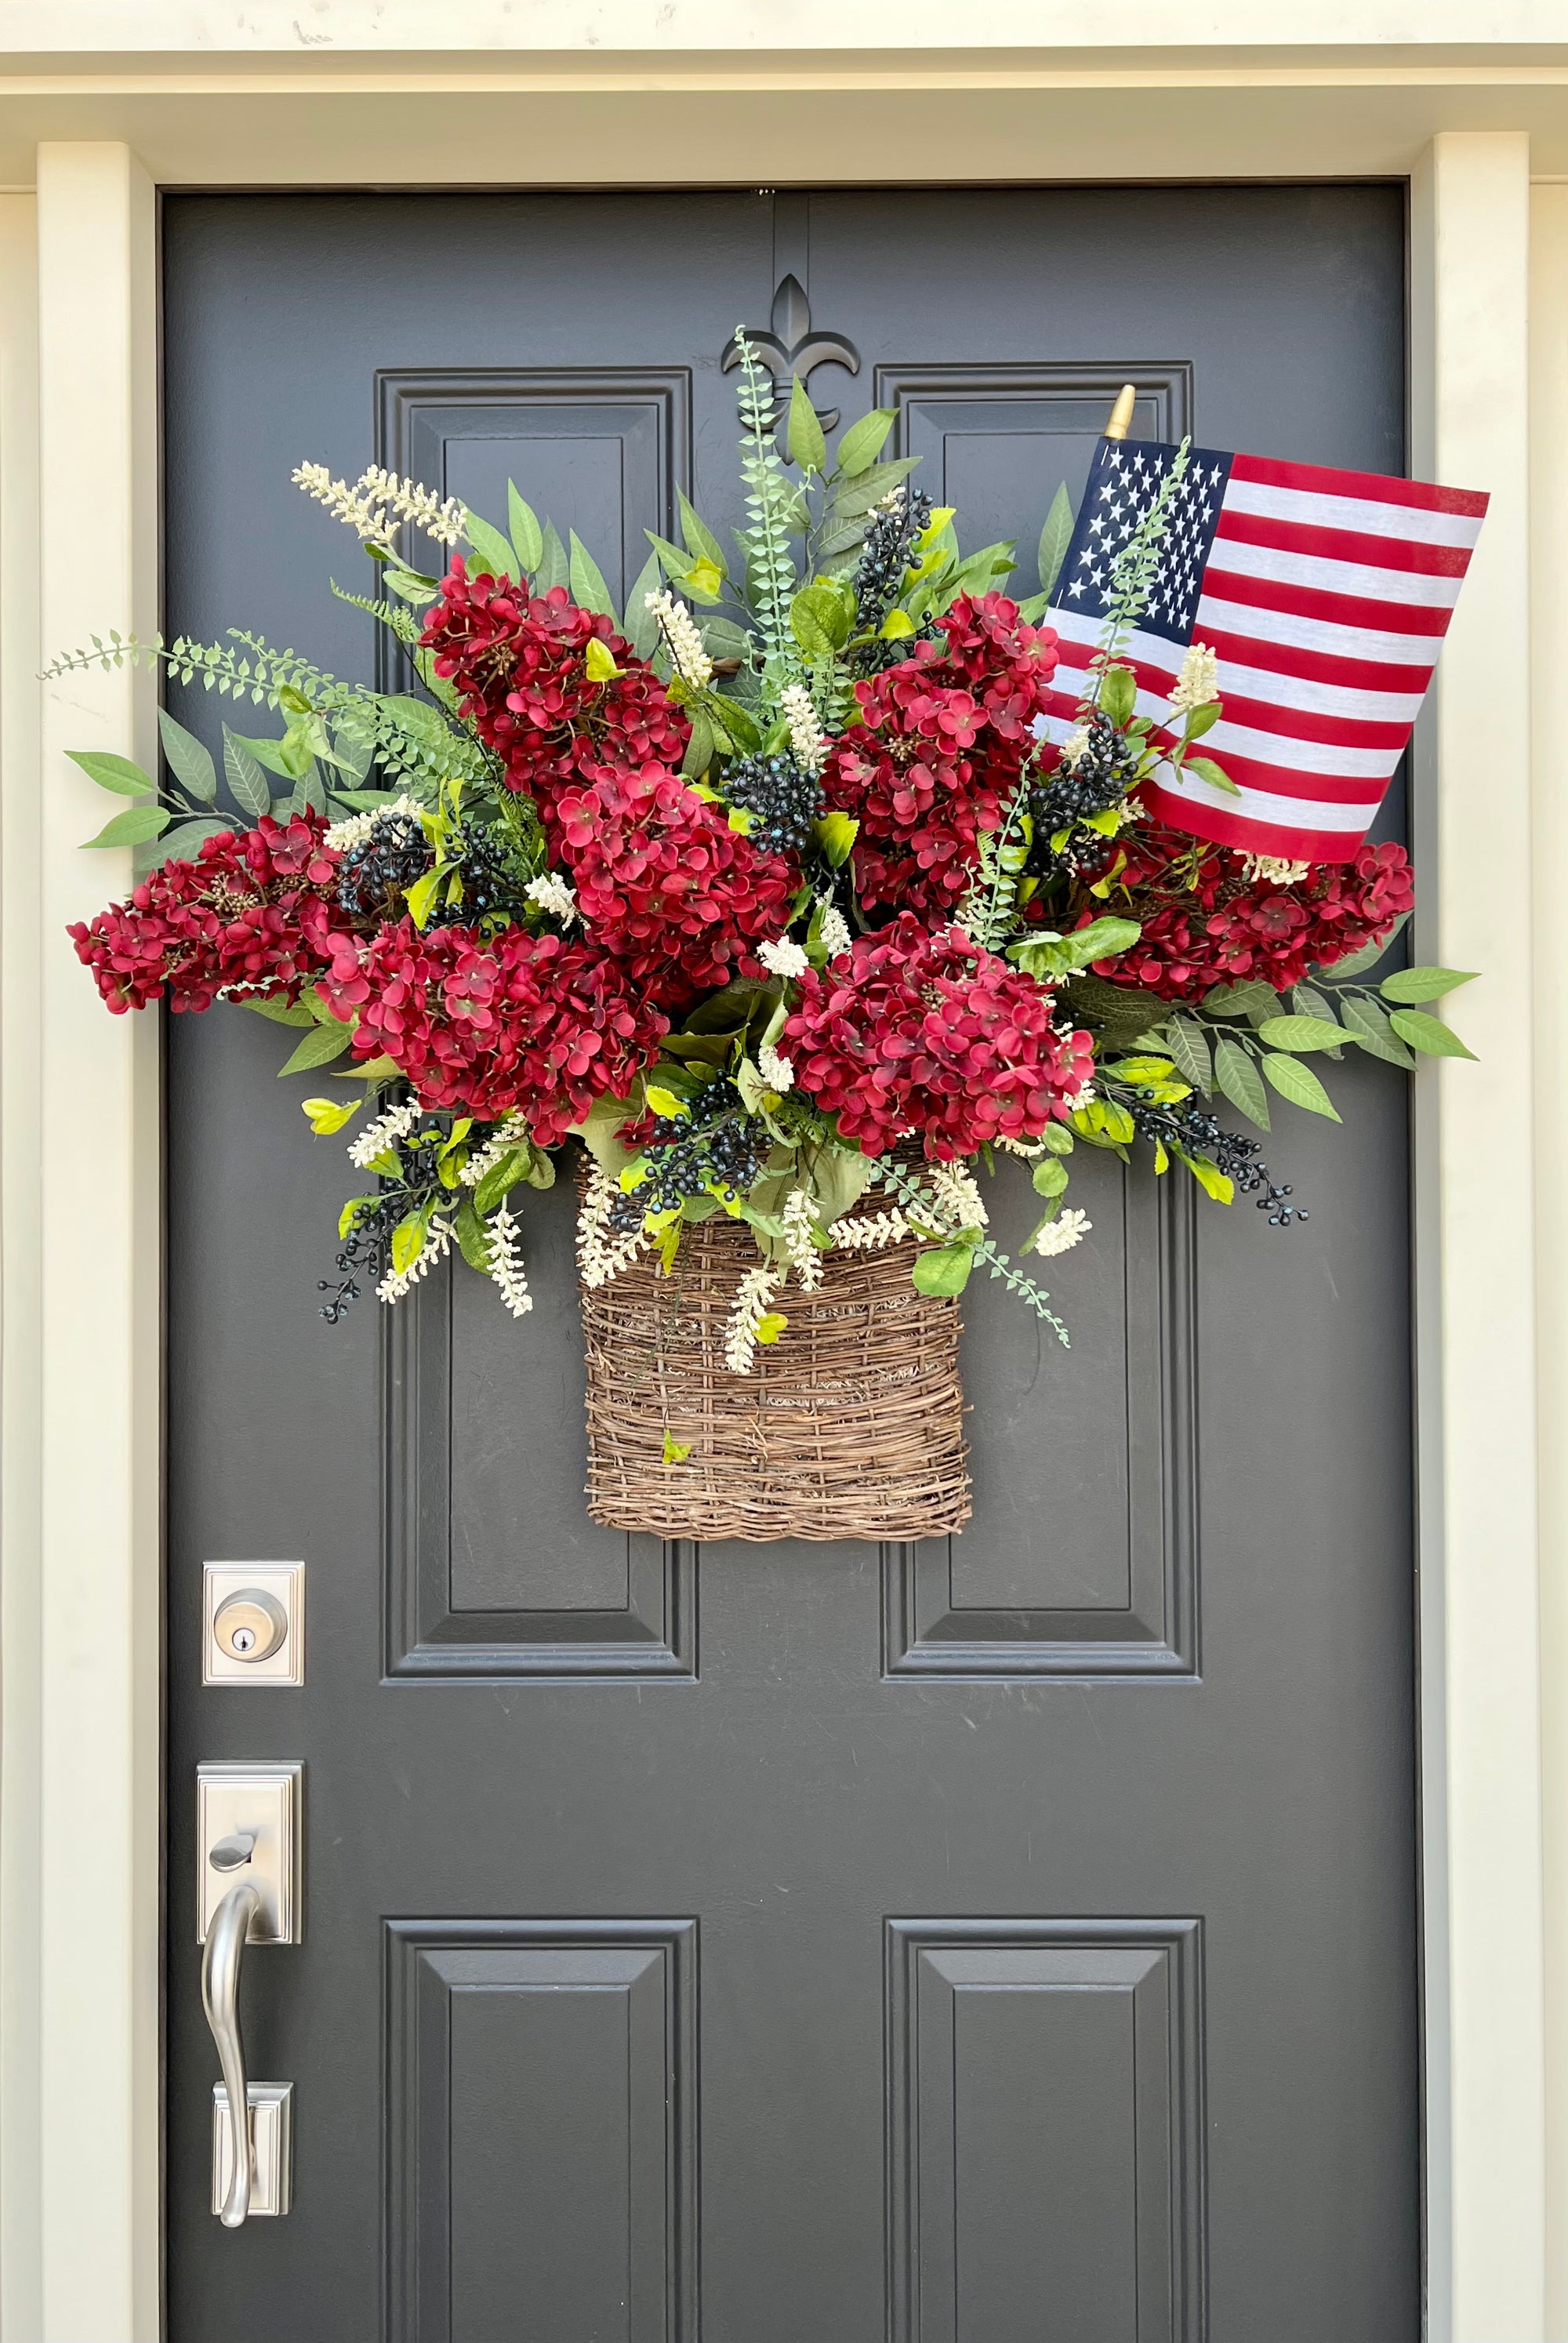 Patriotic Door Basket Wreaths, Patriotic Home Decor, Unites States Flag Decoration